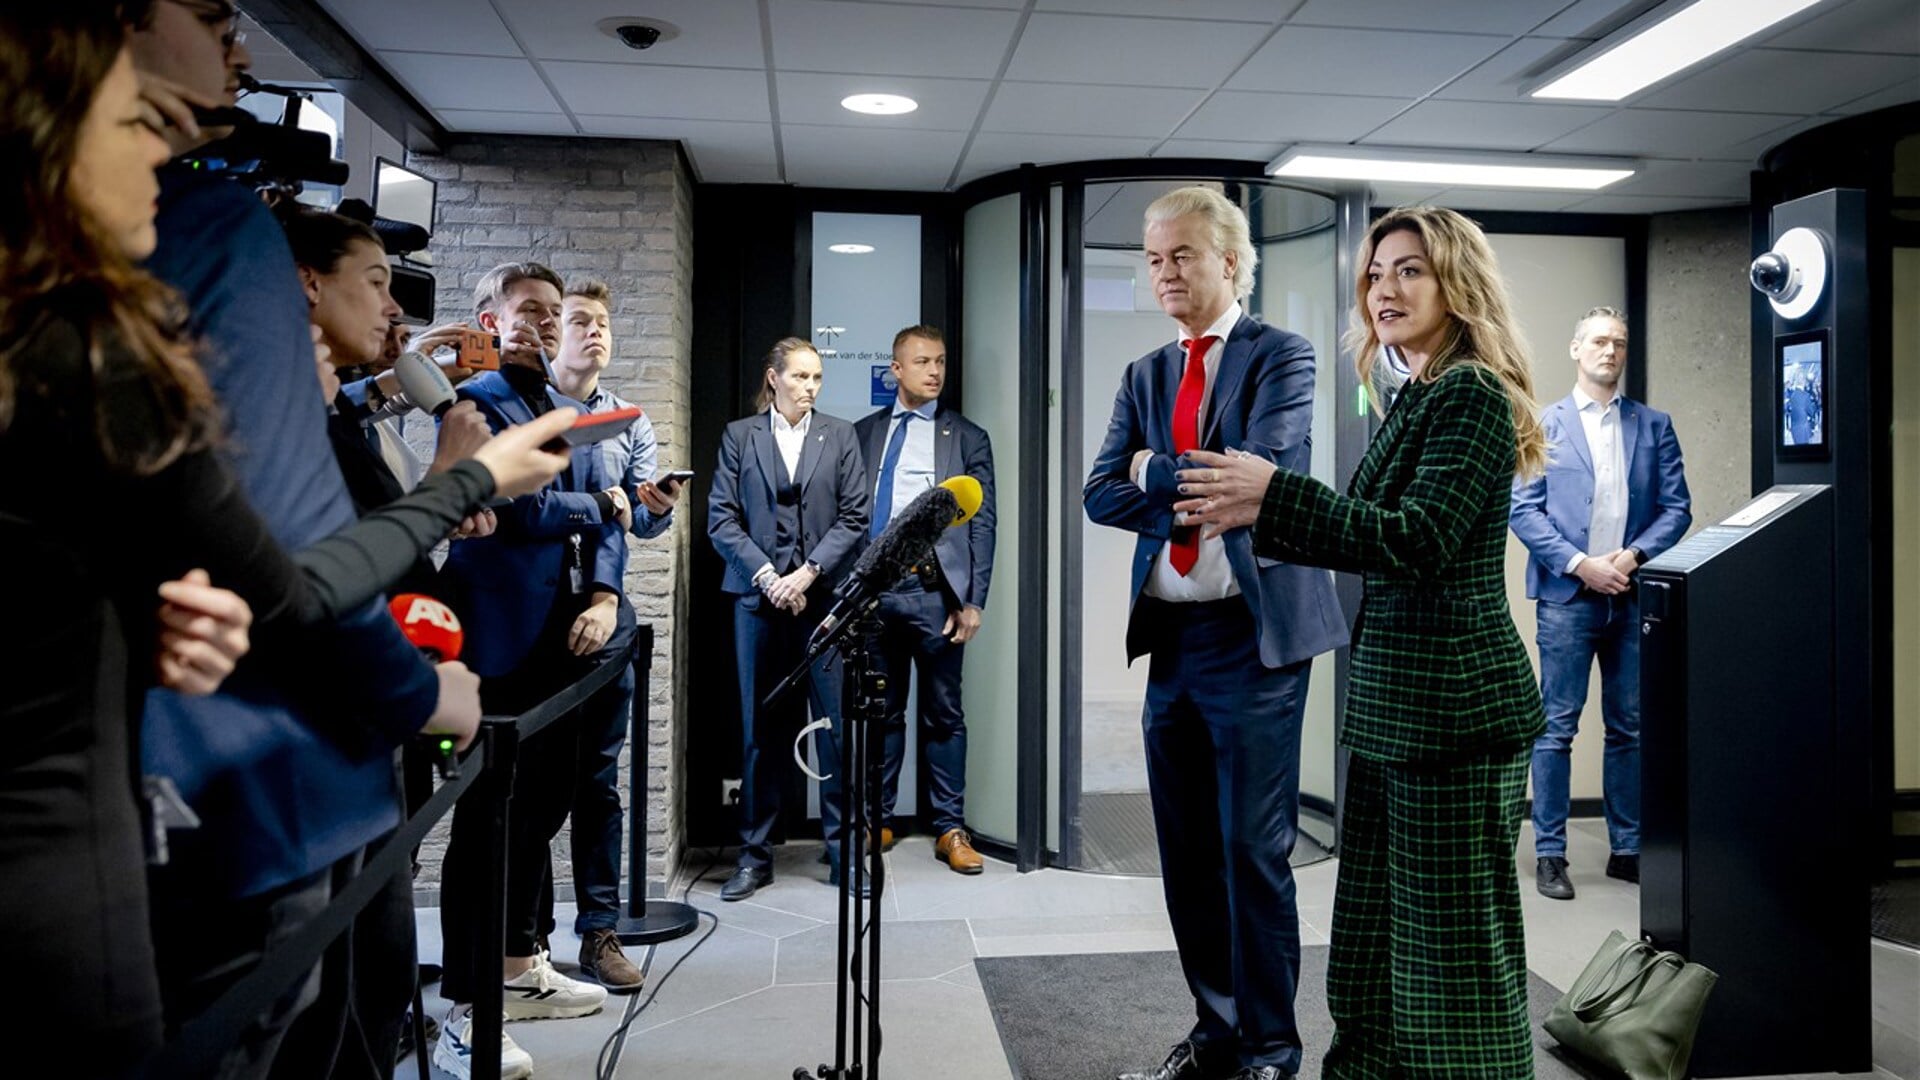 "Het land moet bestuurd worden", zei Wilders 